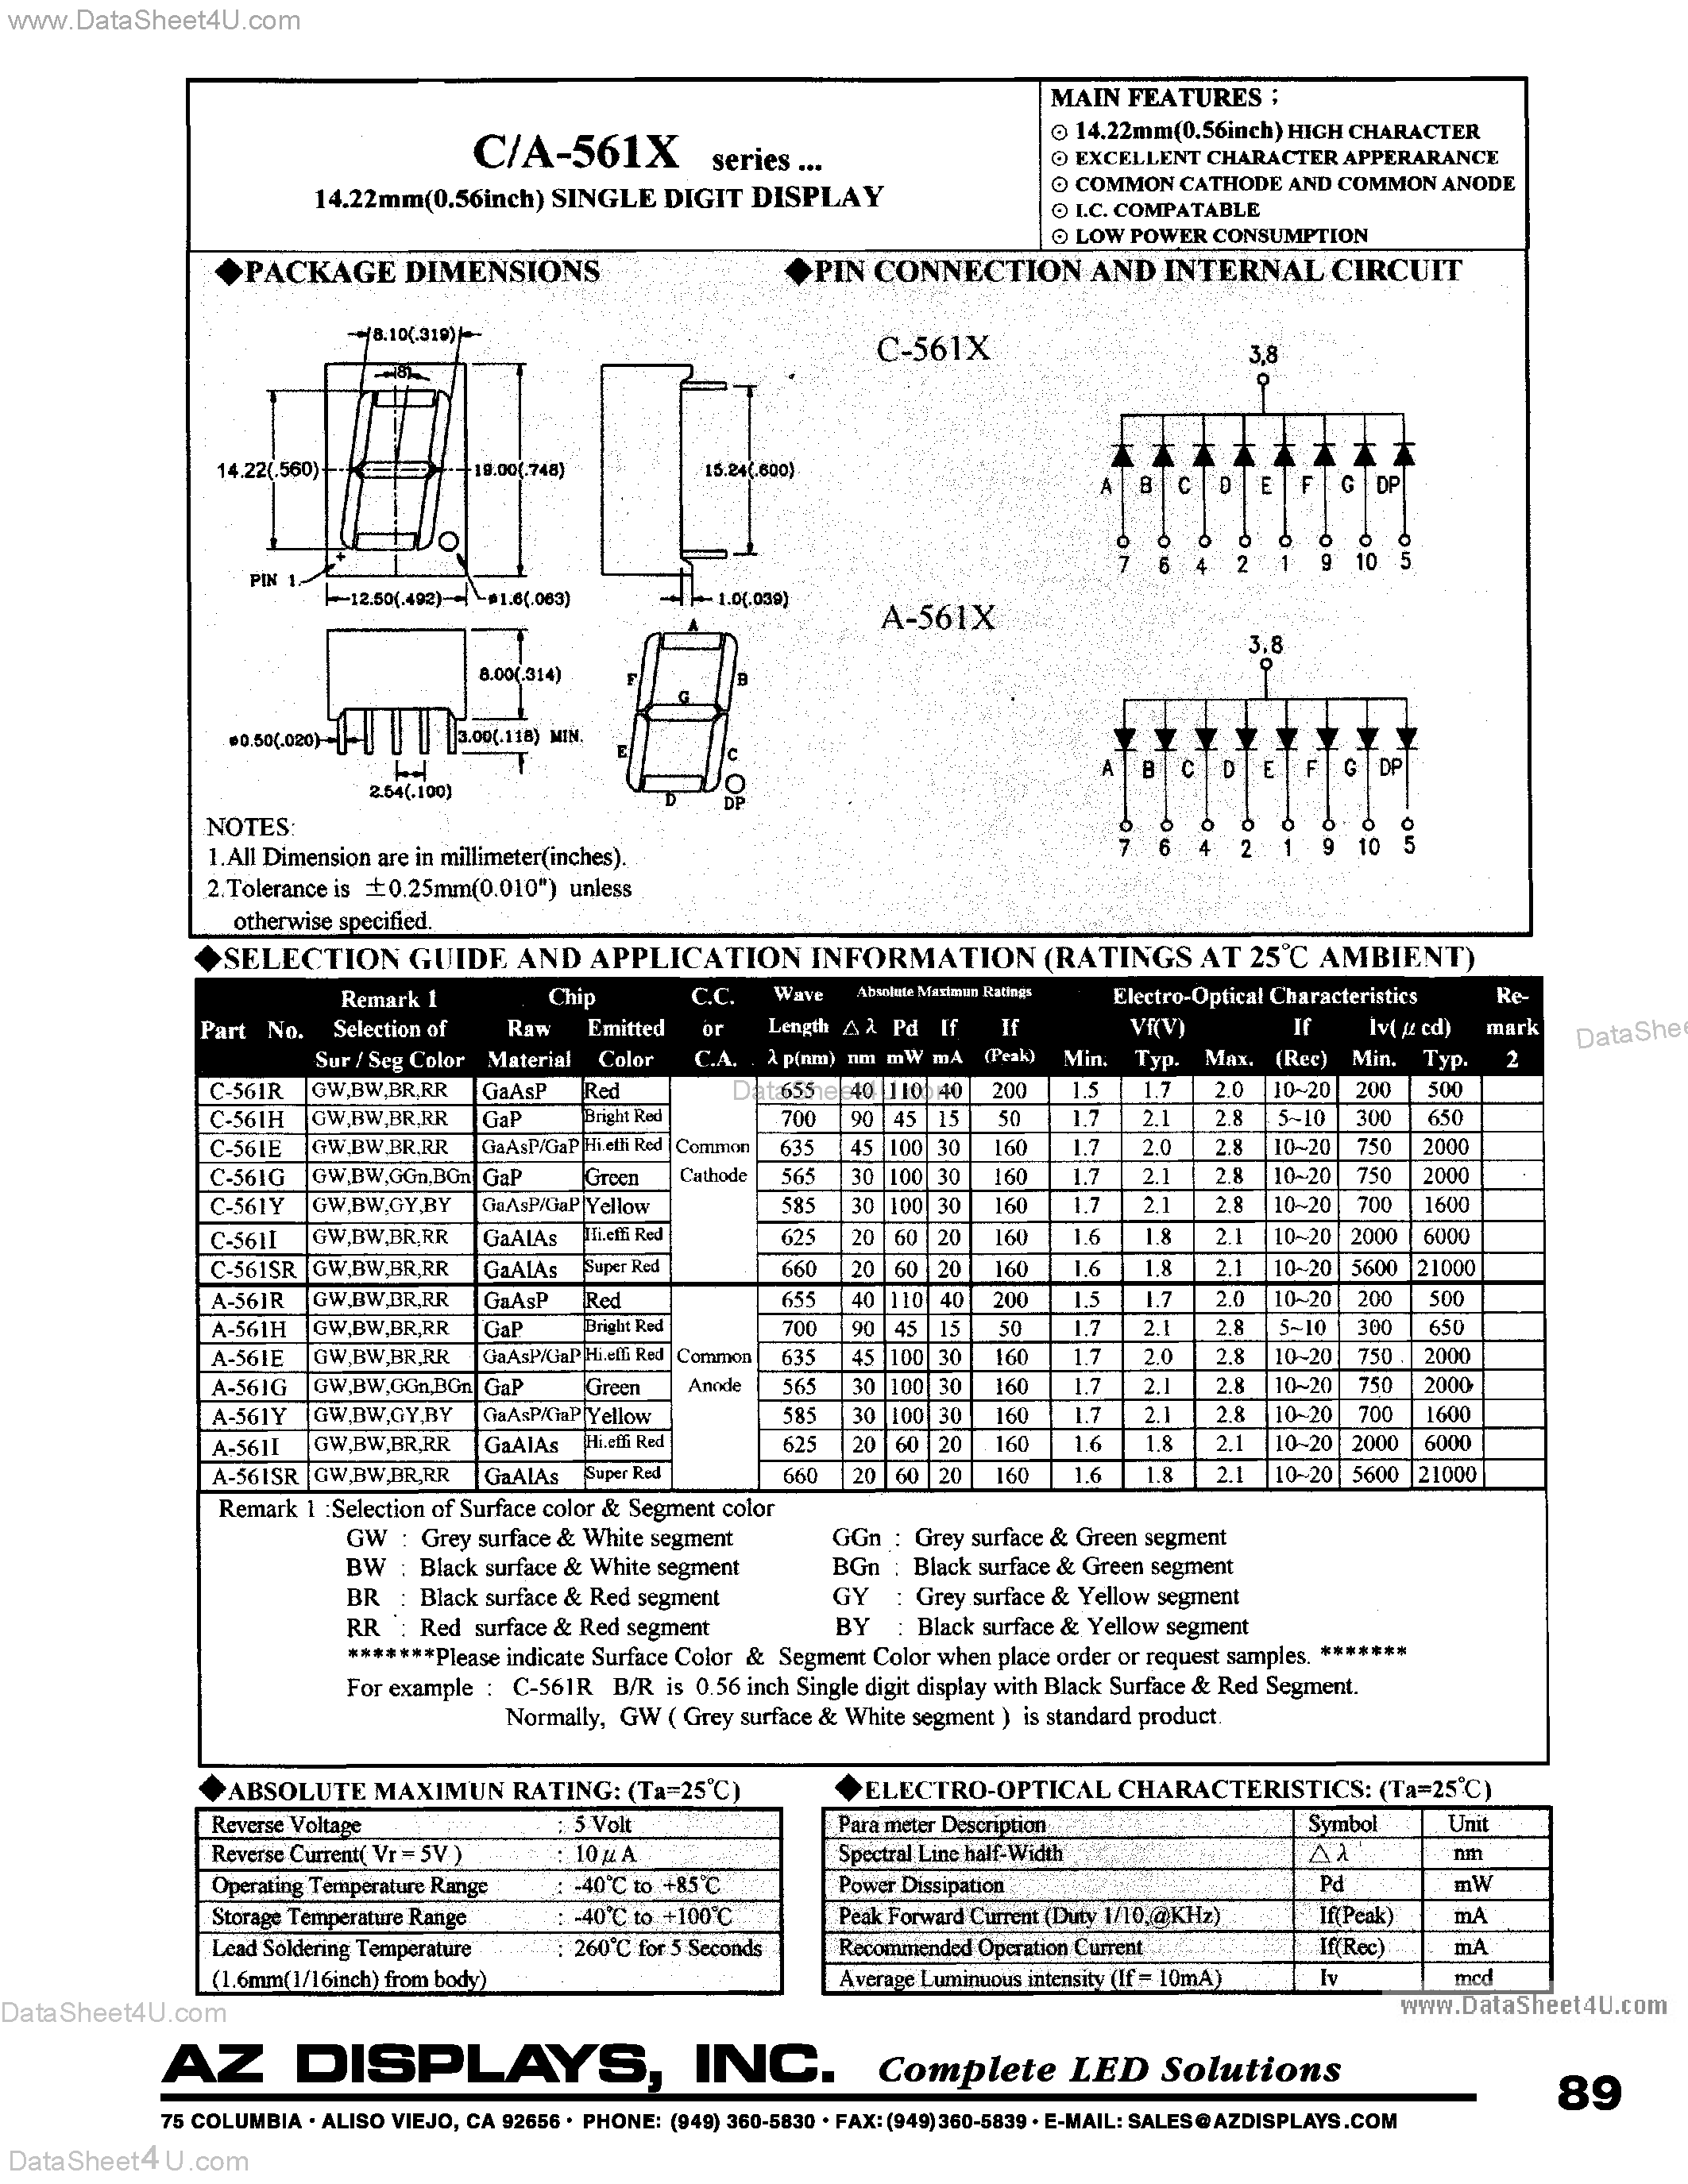 Datasheet C-561I - (C-561x) LED Display page 1